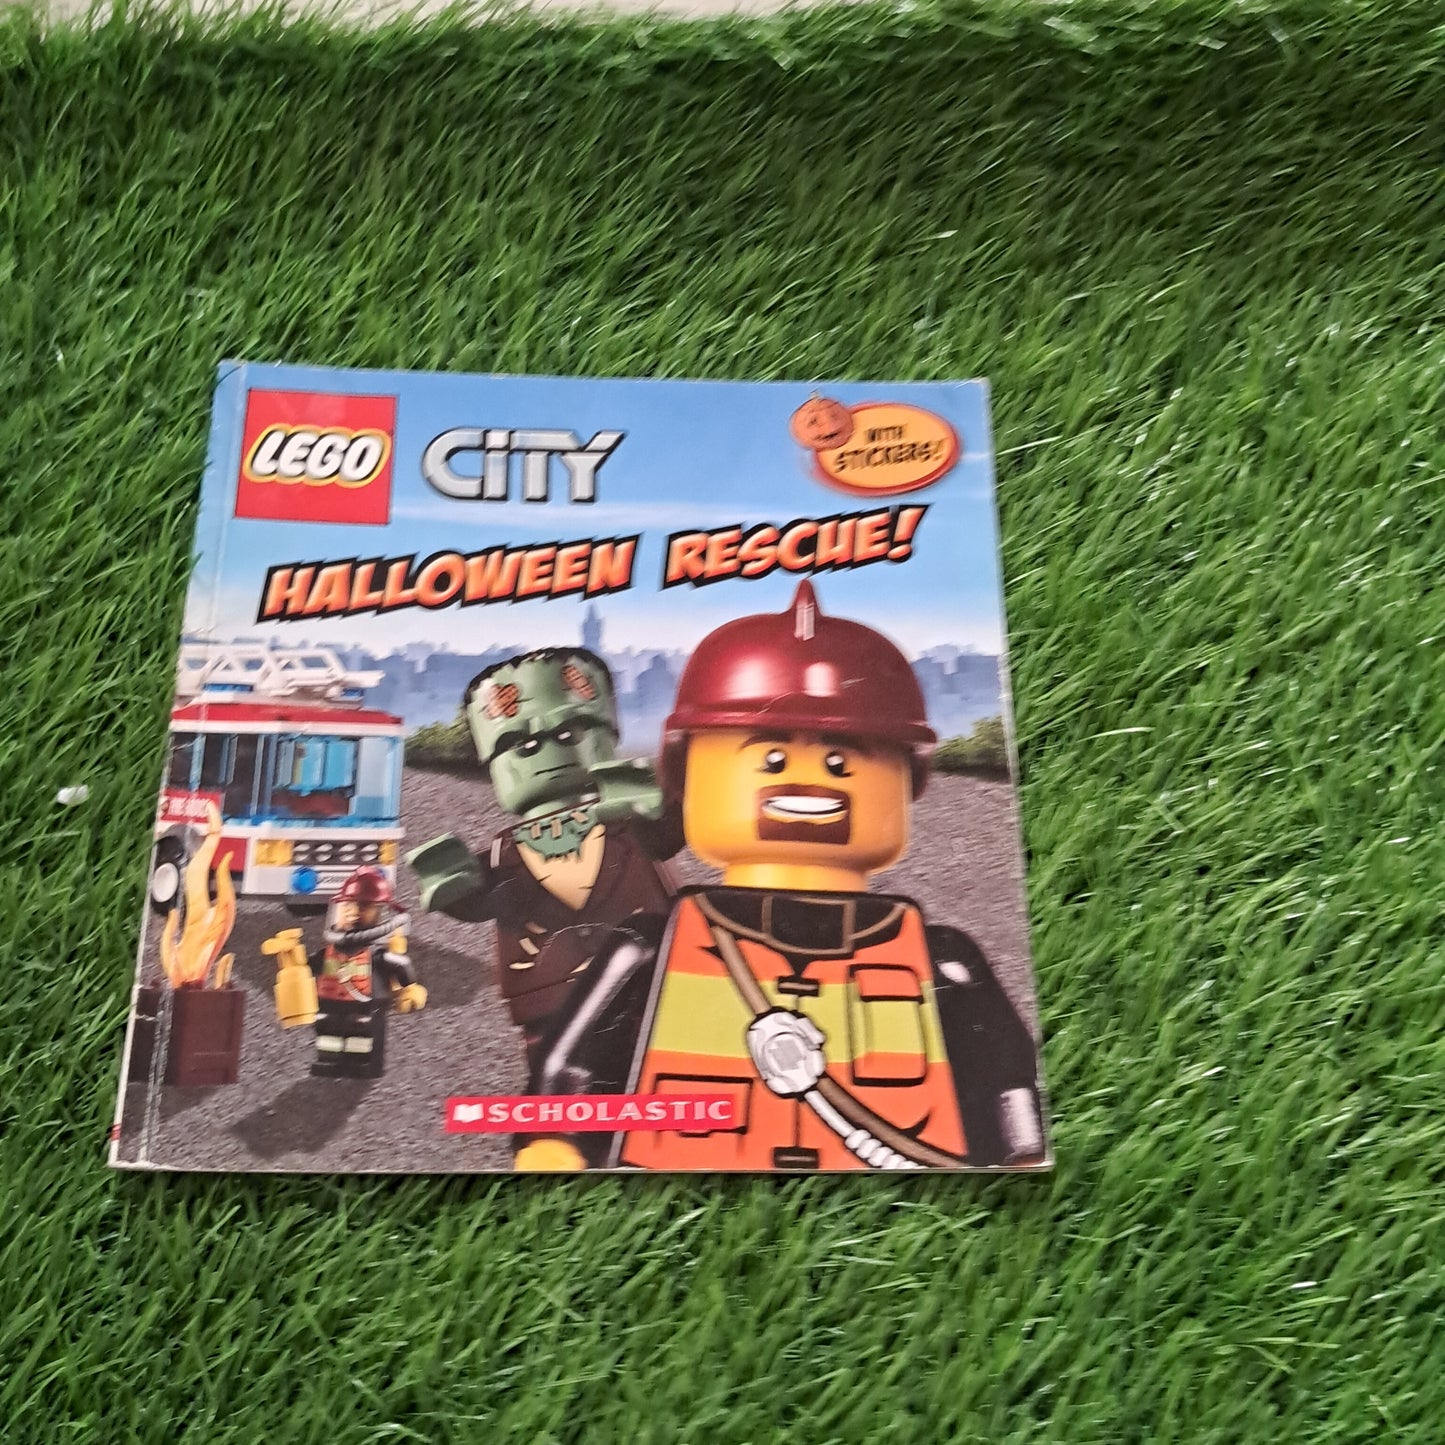 LEGO CITY HALLOWEEN RESCUE!